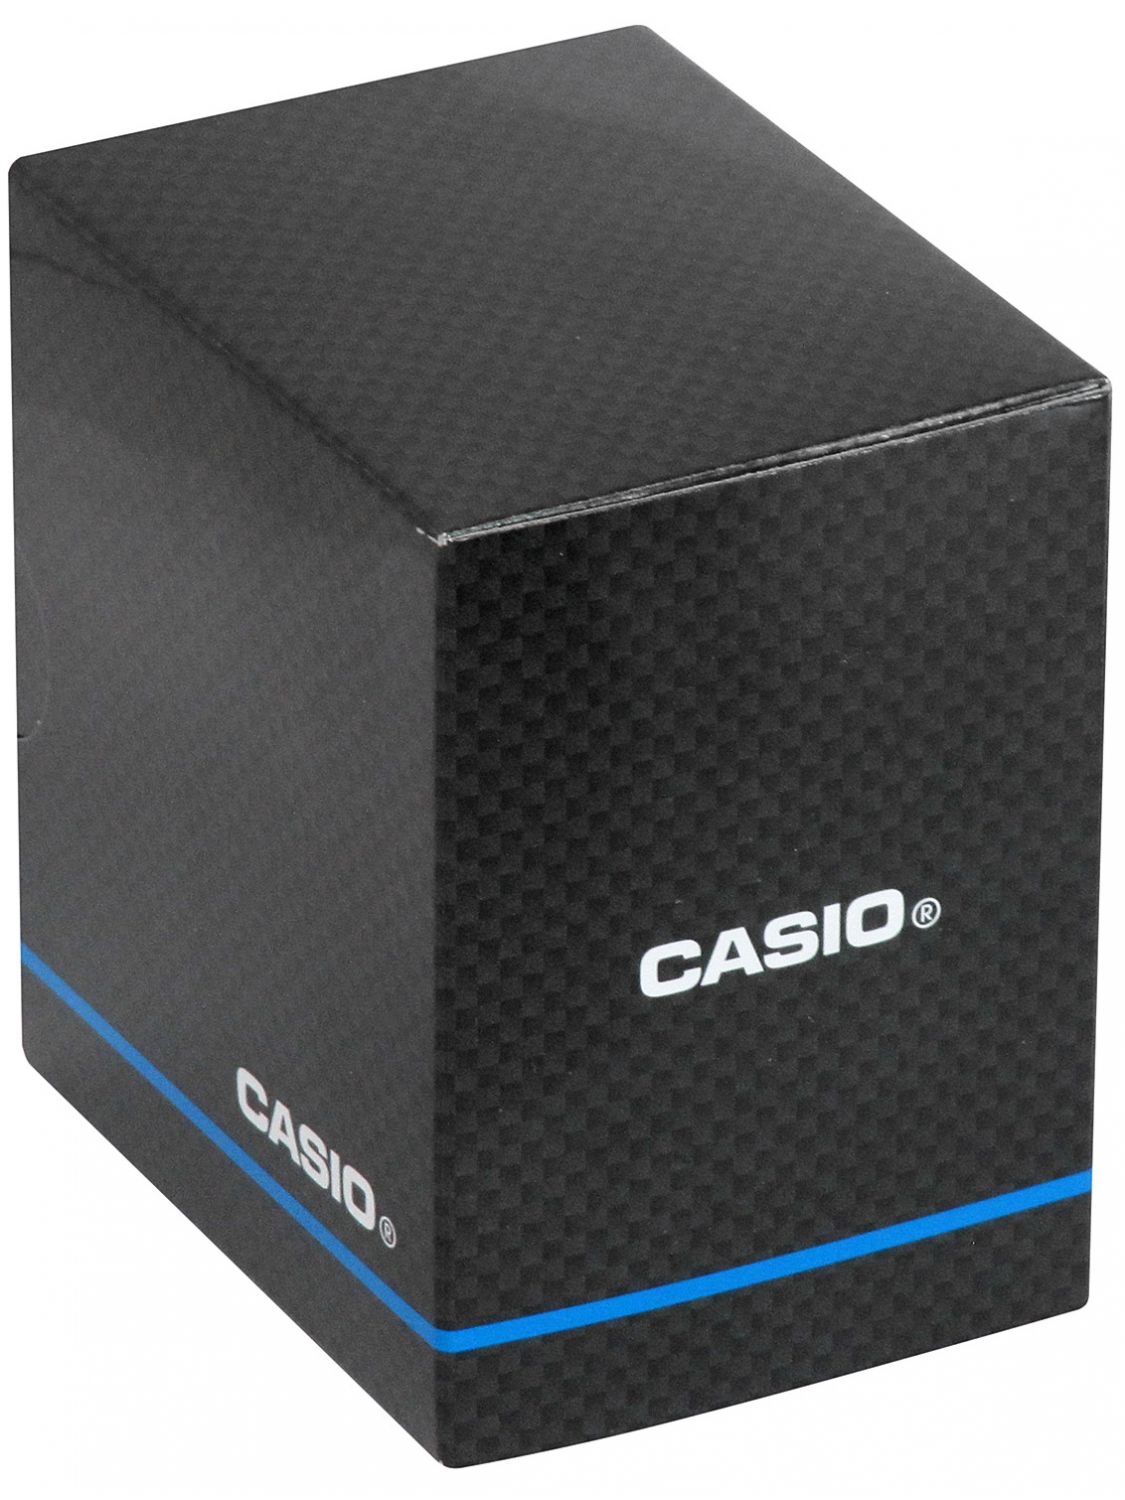 Casio • Quartz Men\'s uhrcenter MTP-B145D-2A1VEF Watch Steel/Turquoise